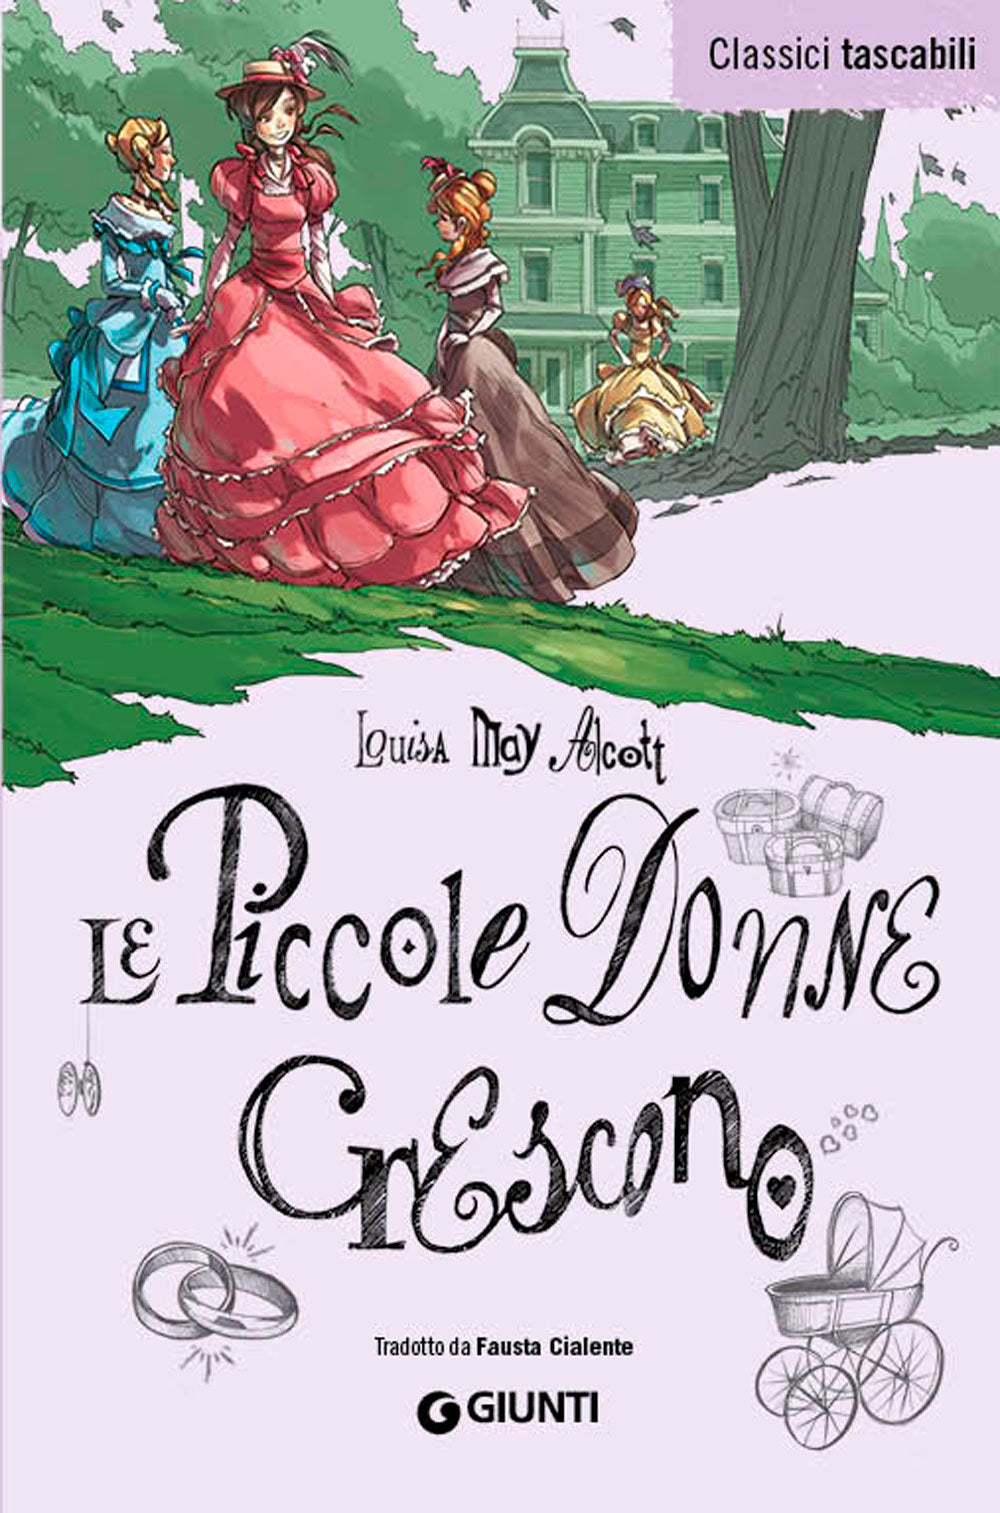 Piccole Donne crescono, Louisa May Alcott